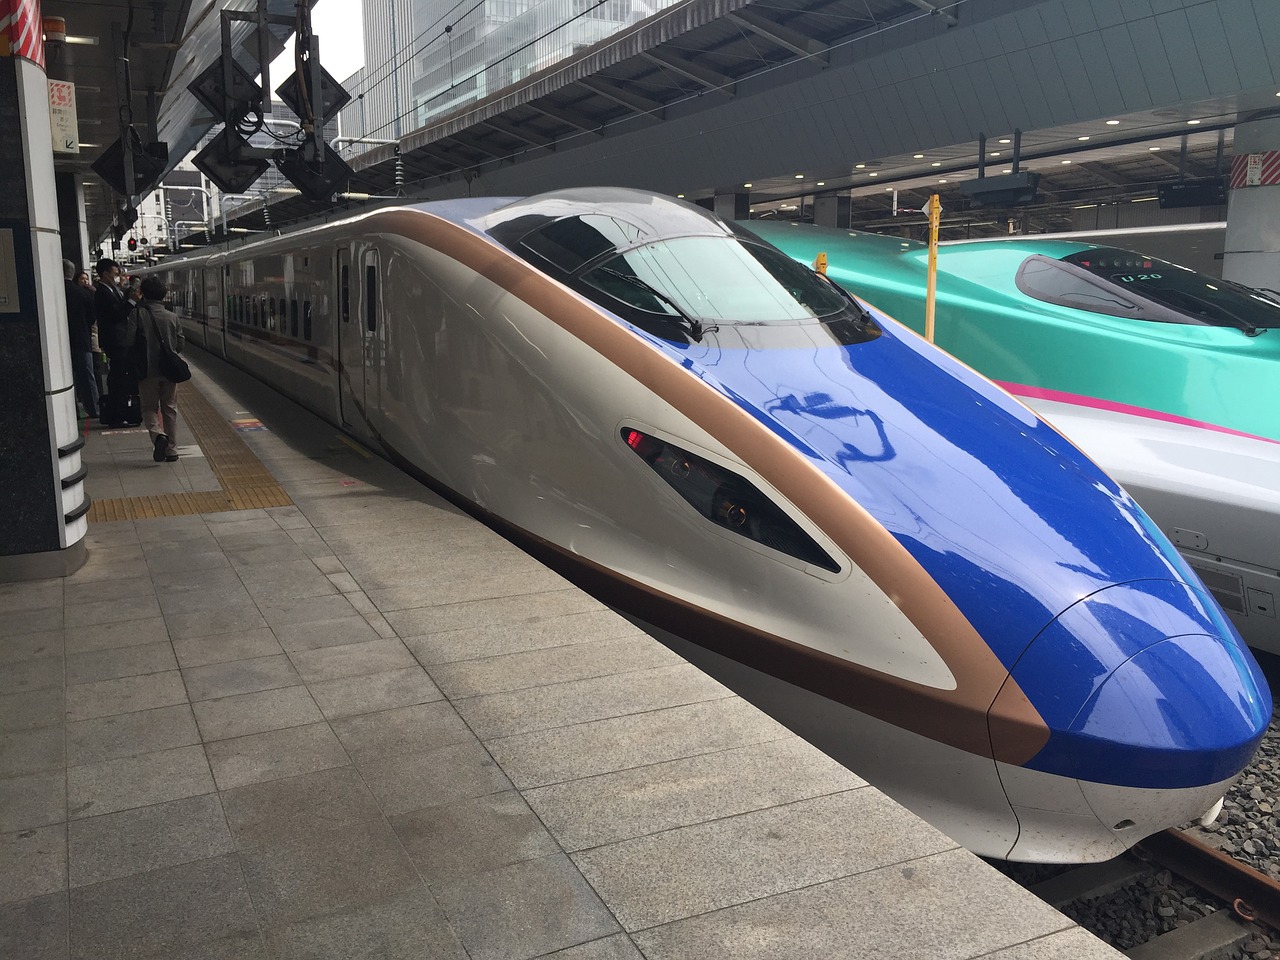 新幹線にも学割が使える 条件 買い方 割引額を徹底解説 トラベルjp 旅行ガイド